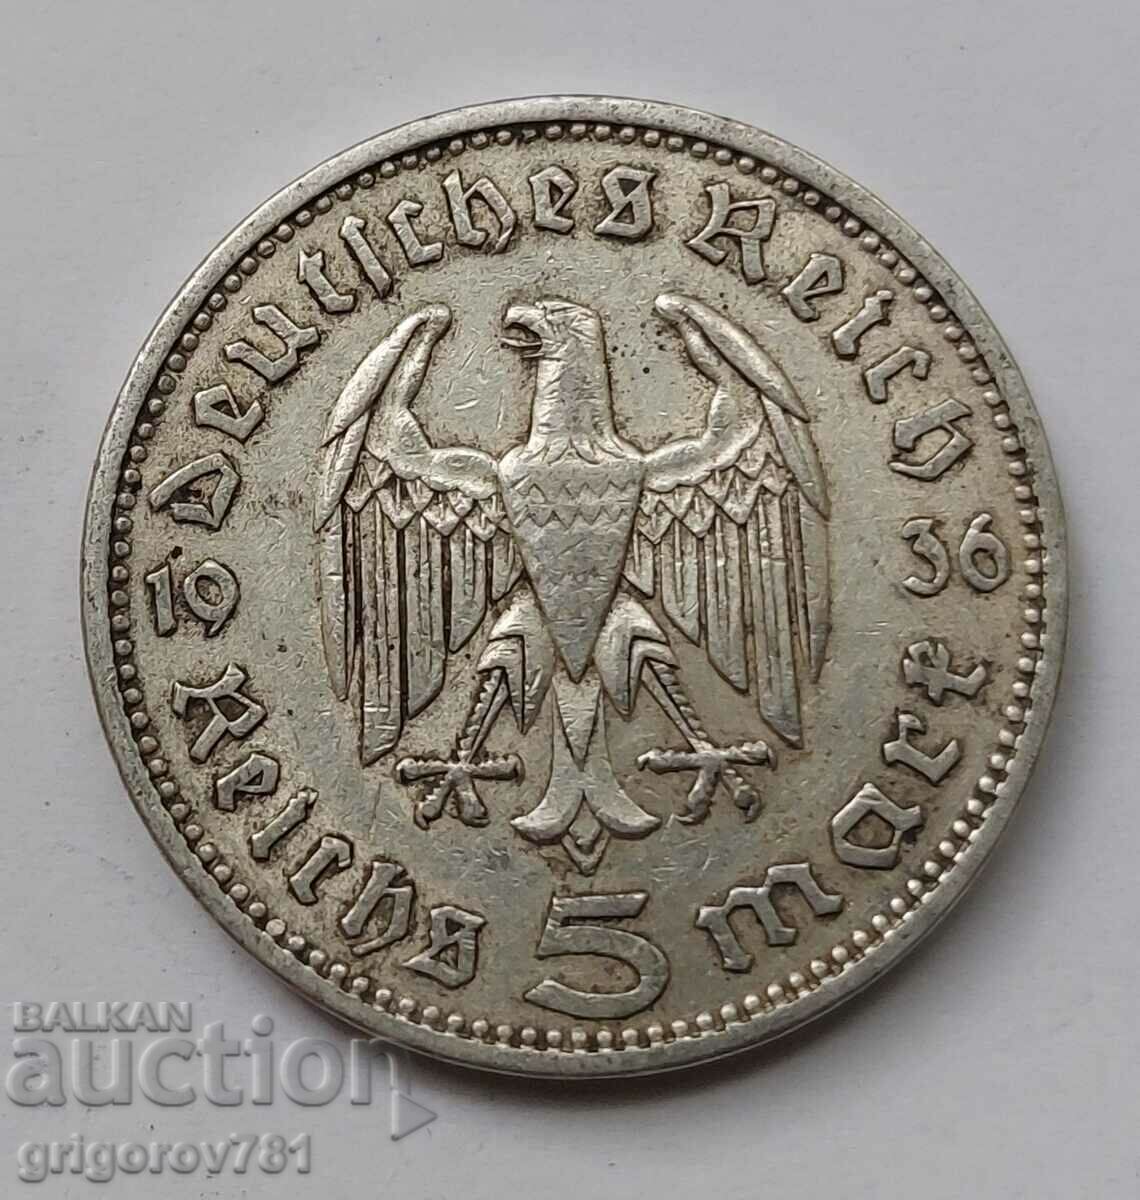 5 mărci de argint Germania 1936 A III Reich Moneda de argint #42